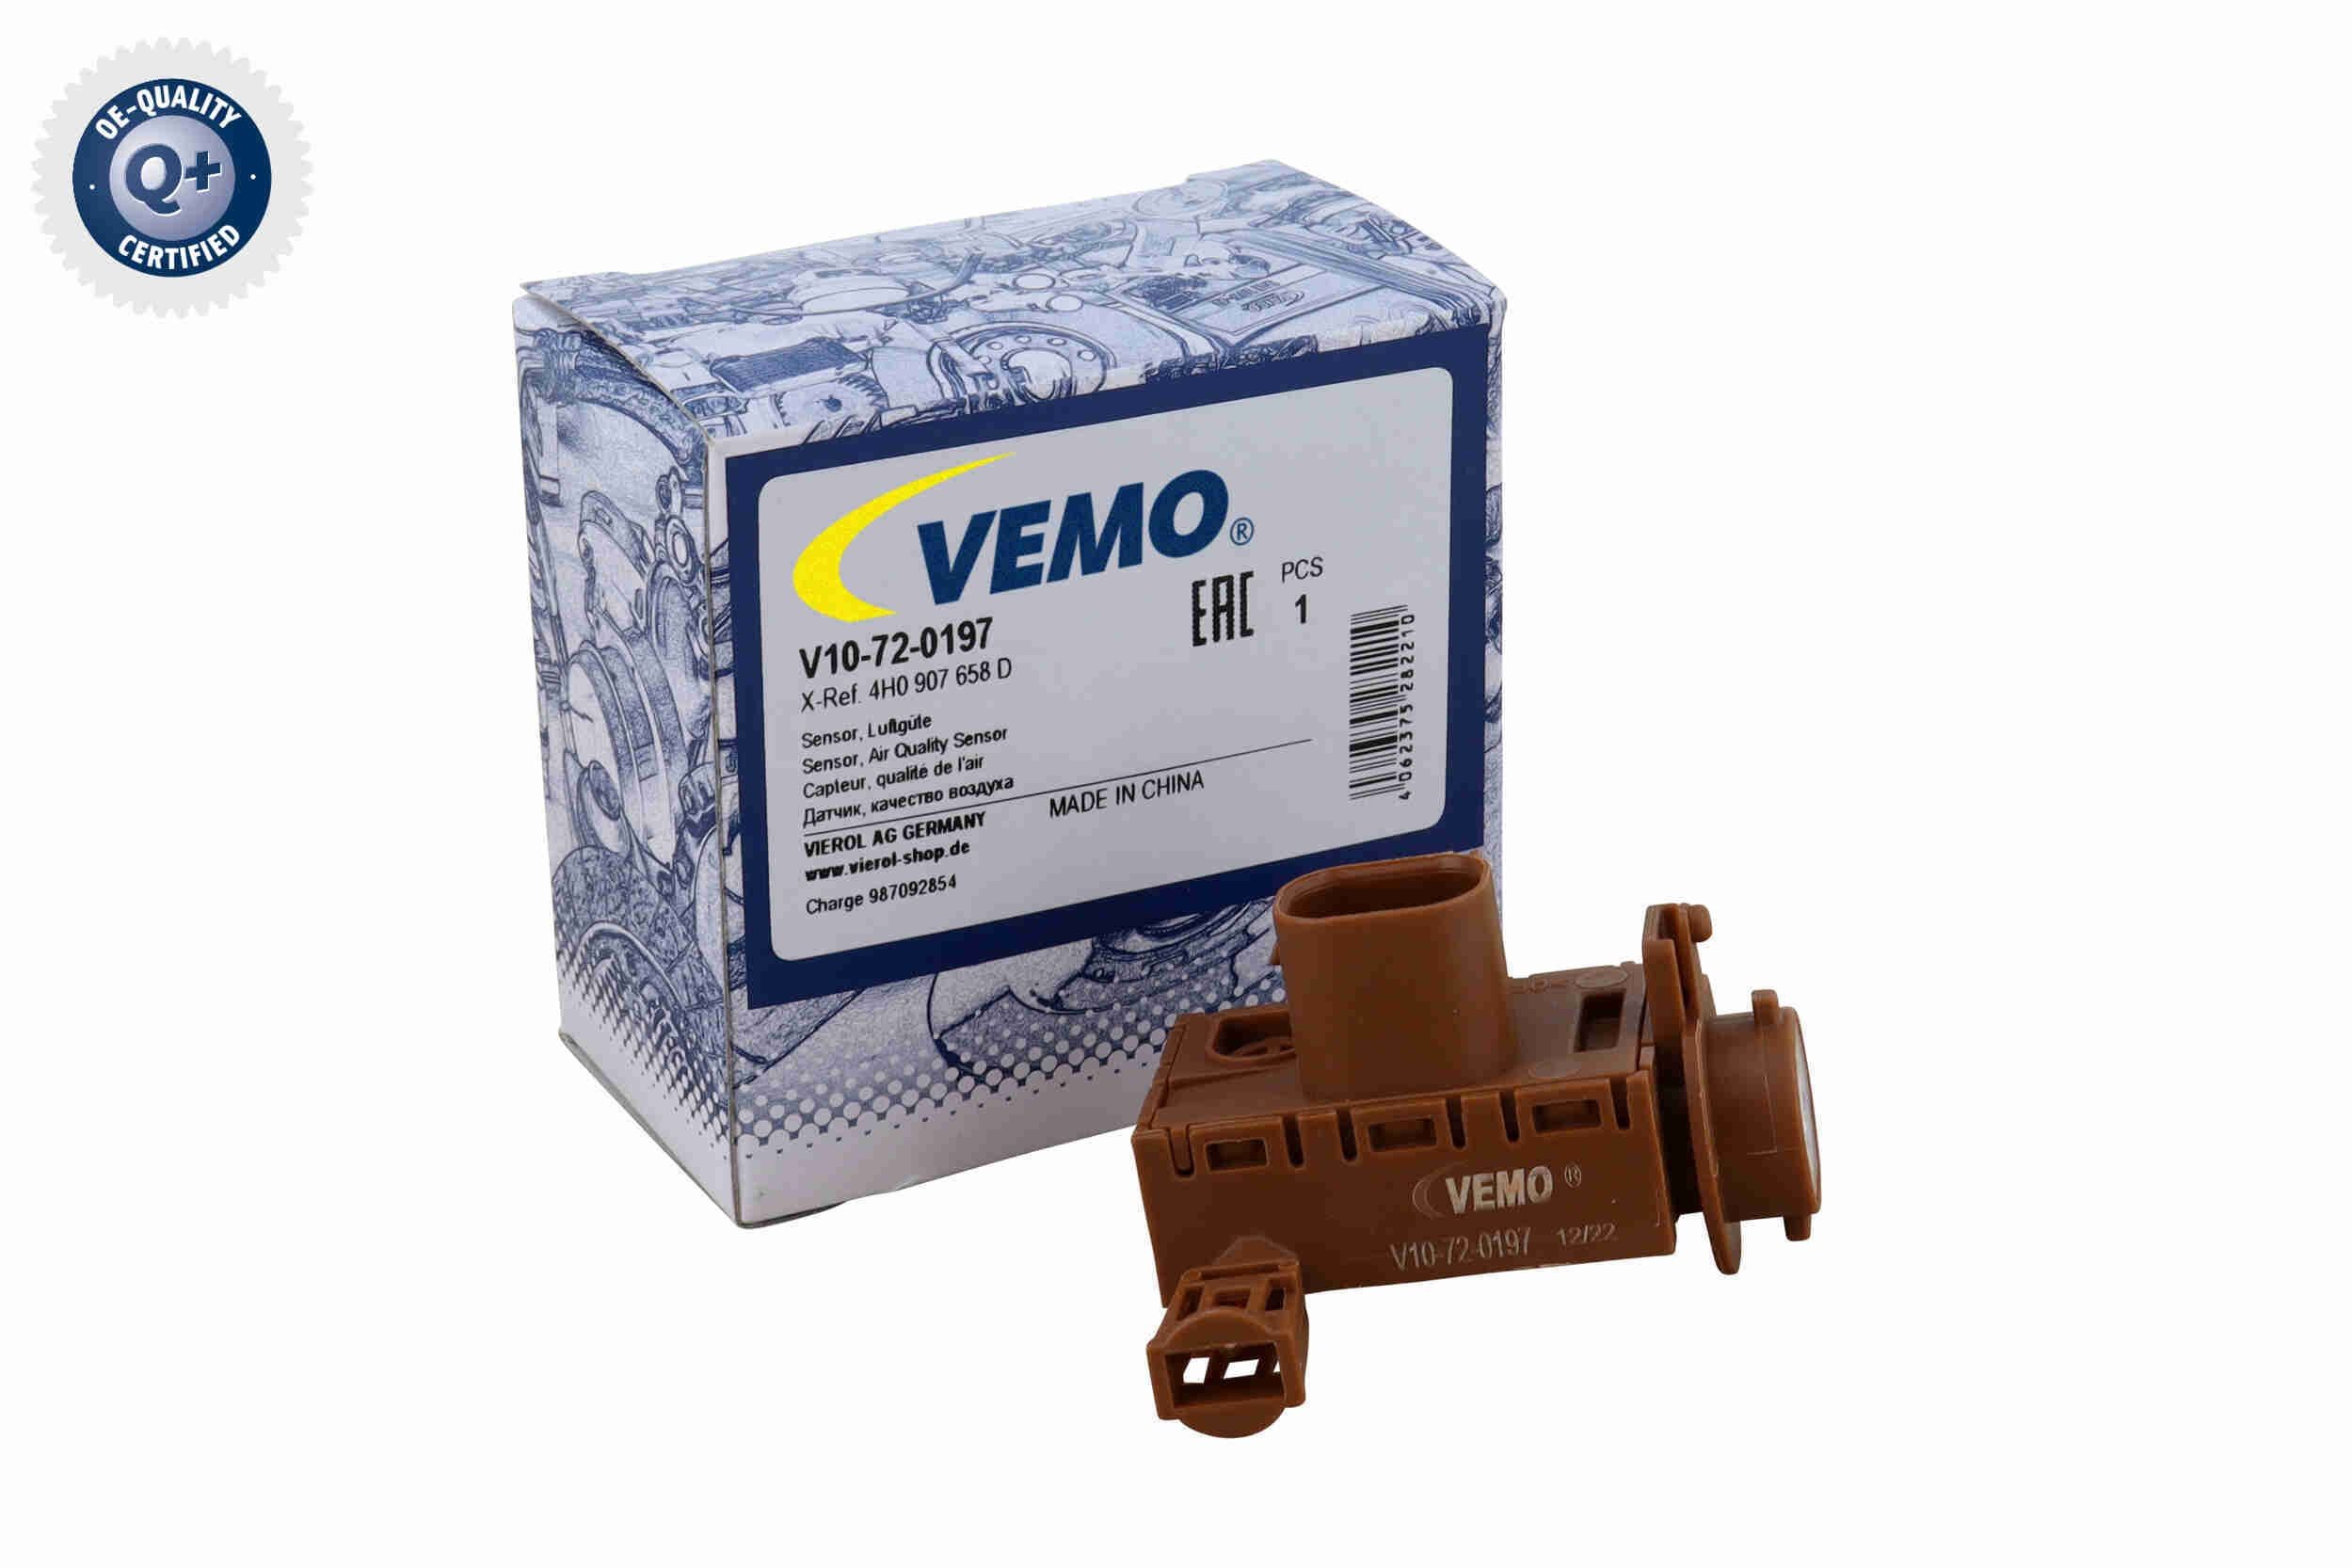 VEMO Air Quality Sensor V10-72-0197